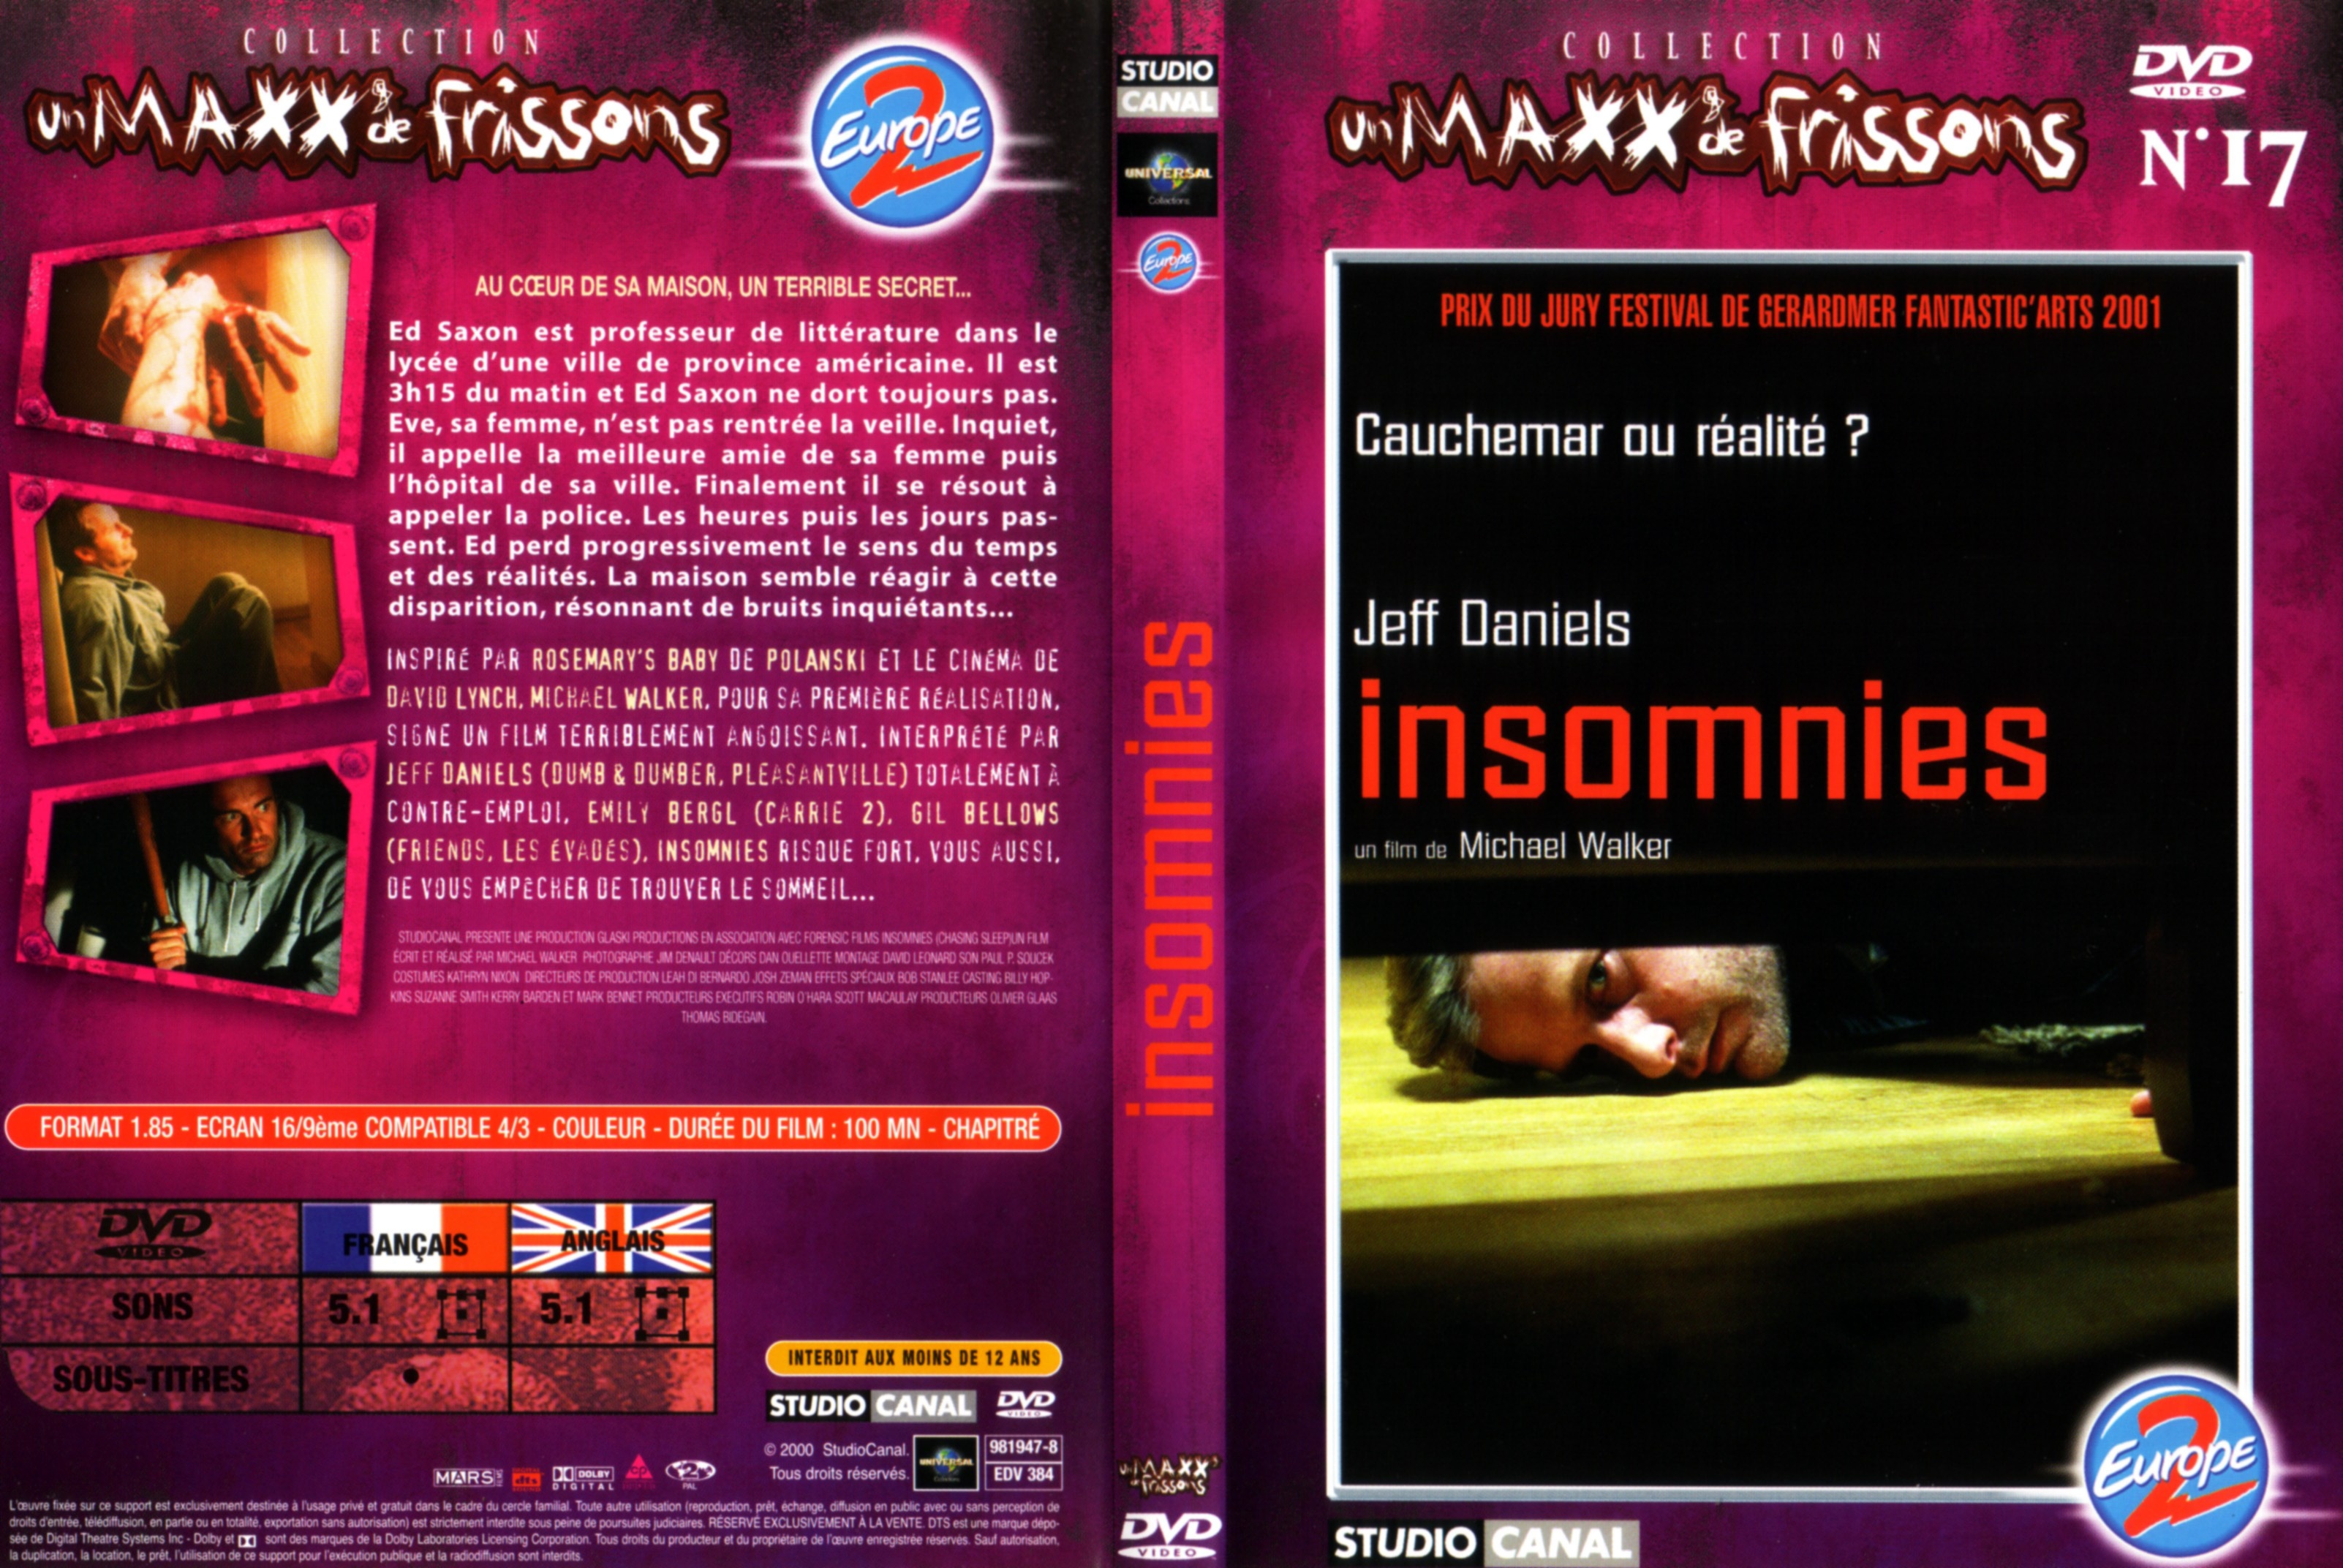 Jaquette DVD Insomnies v2